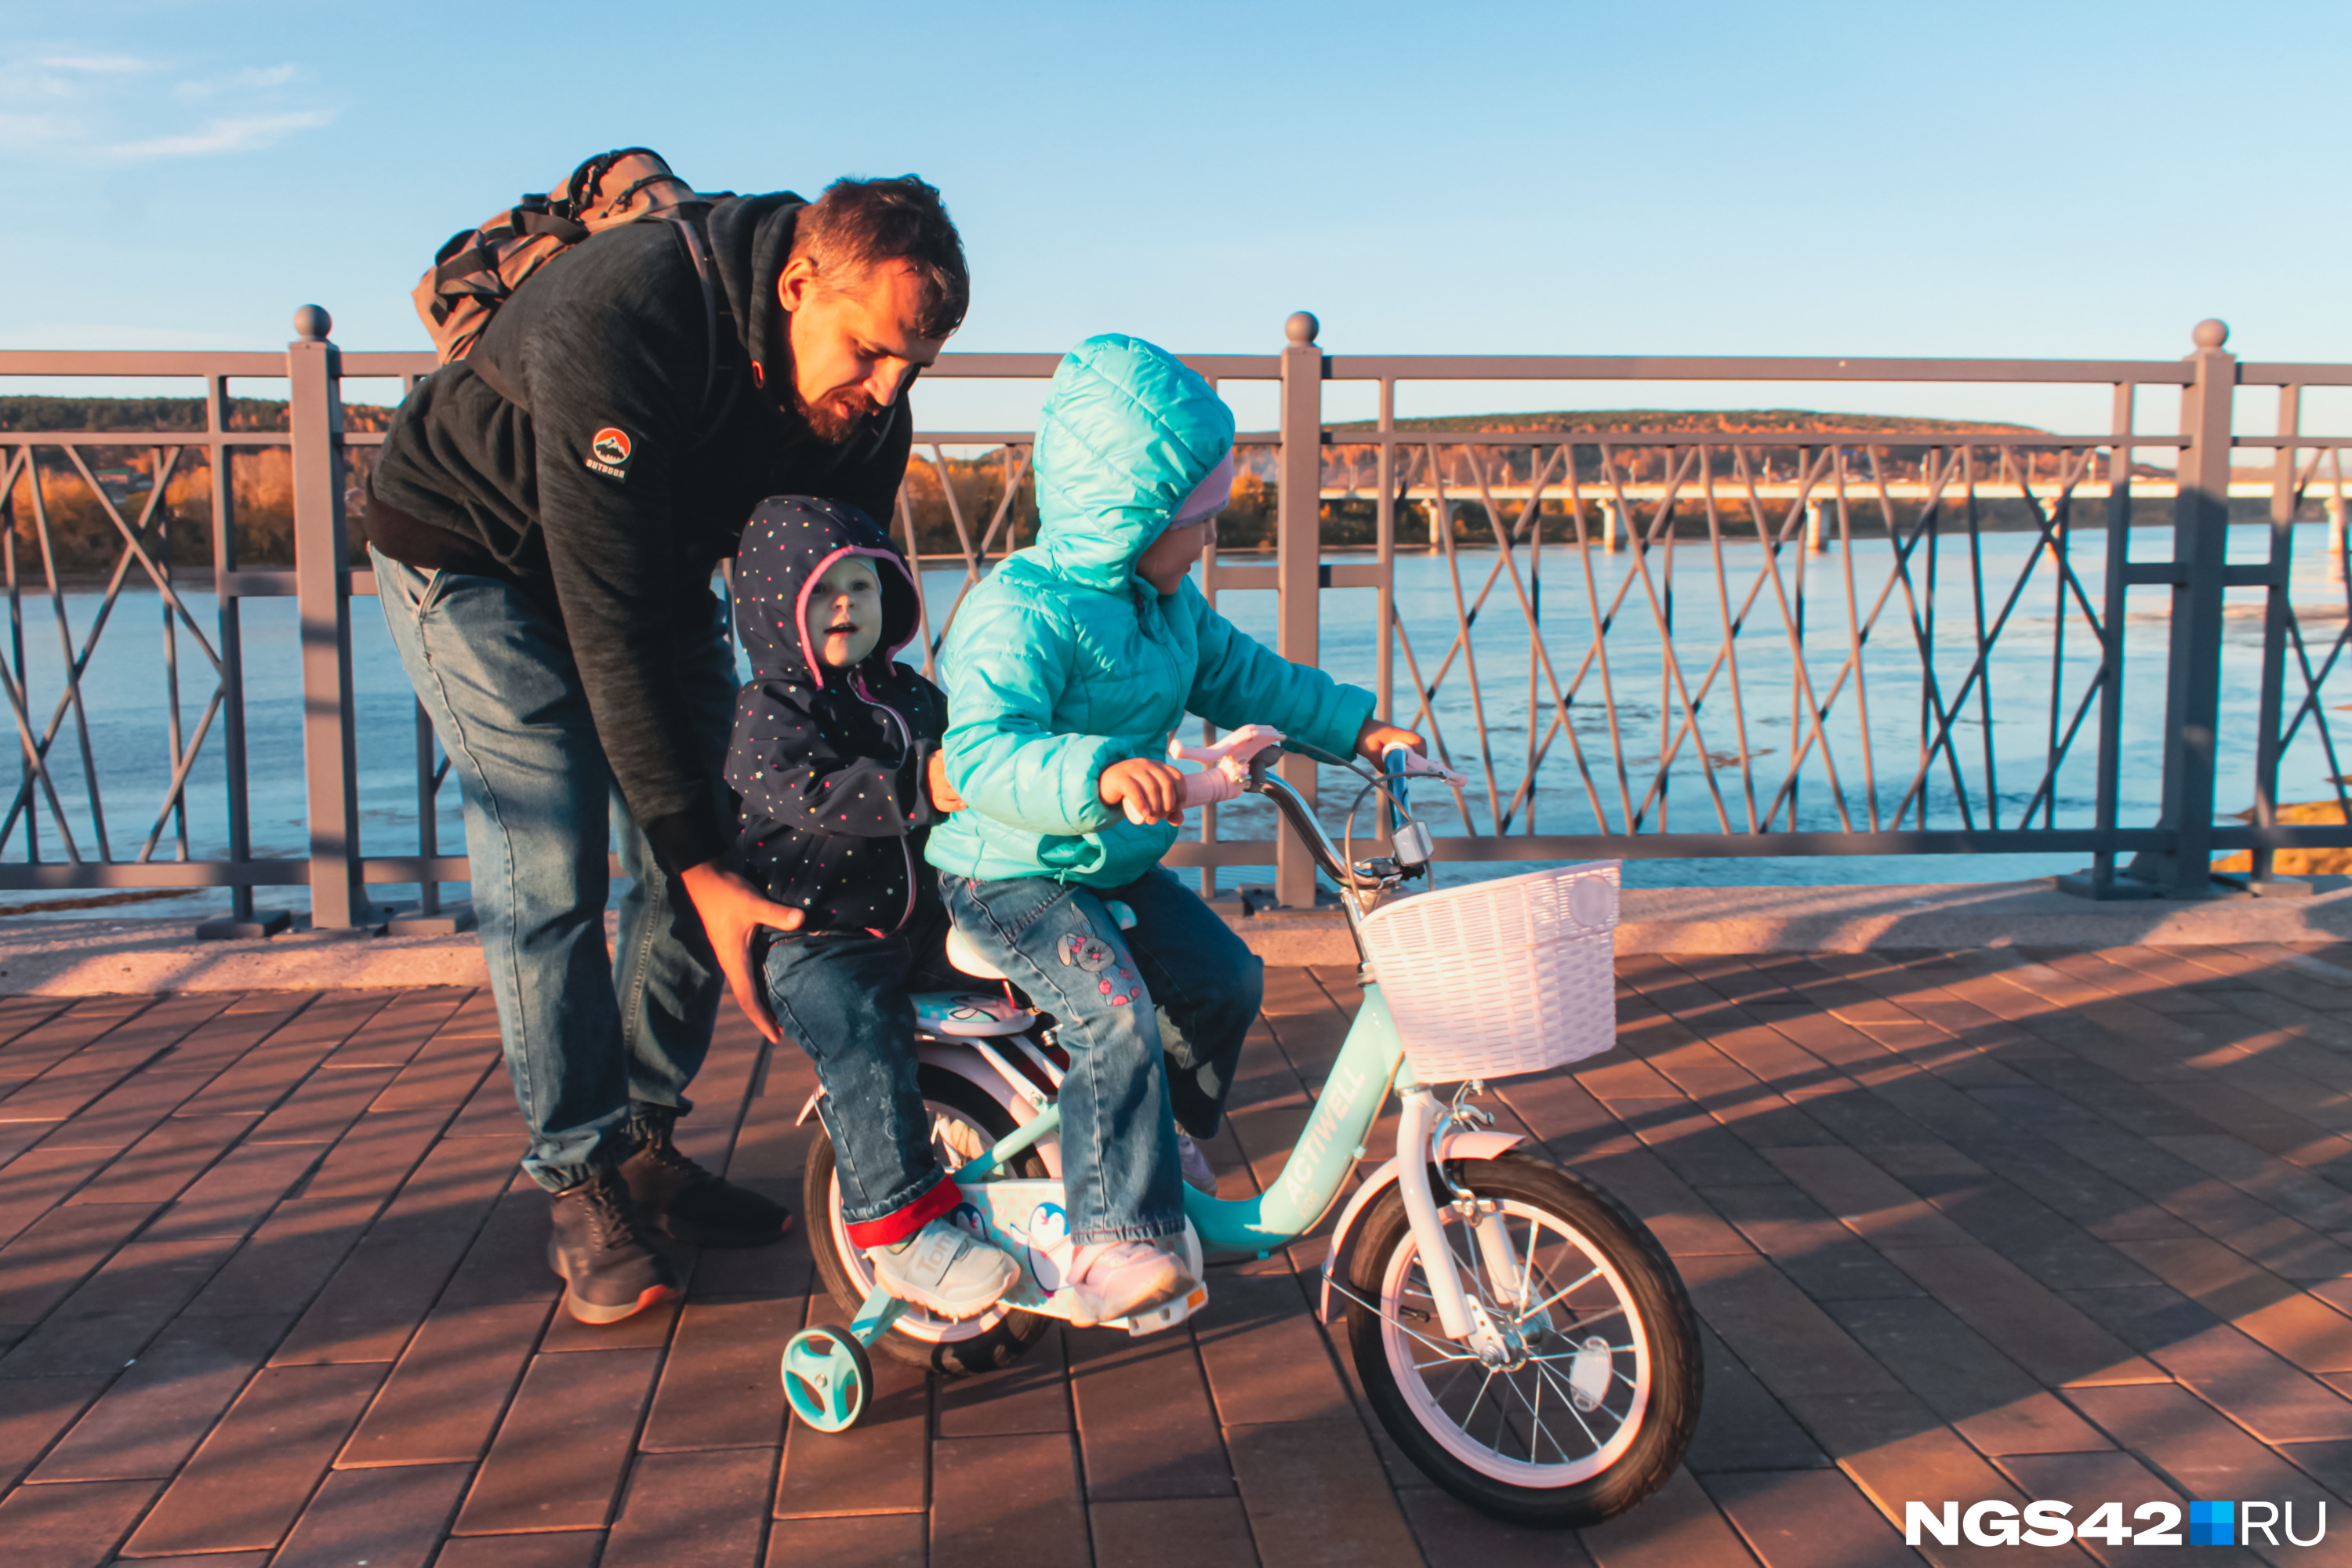 Дети и взрослые уже активно катаются на набережной на велосипедах